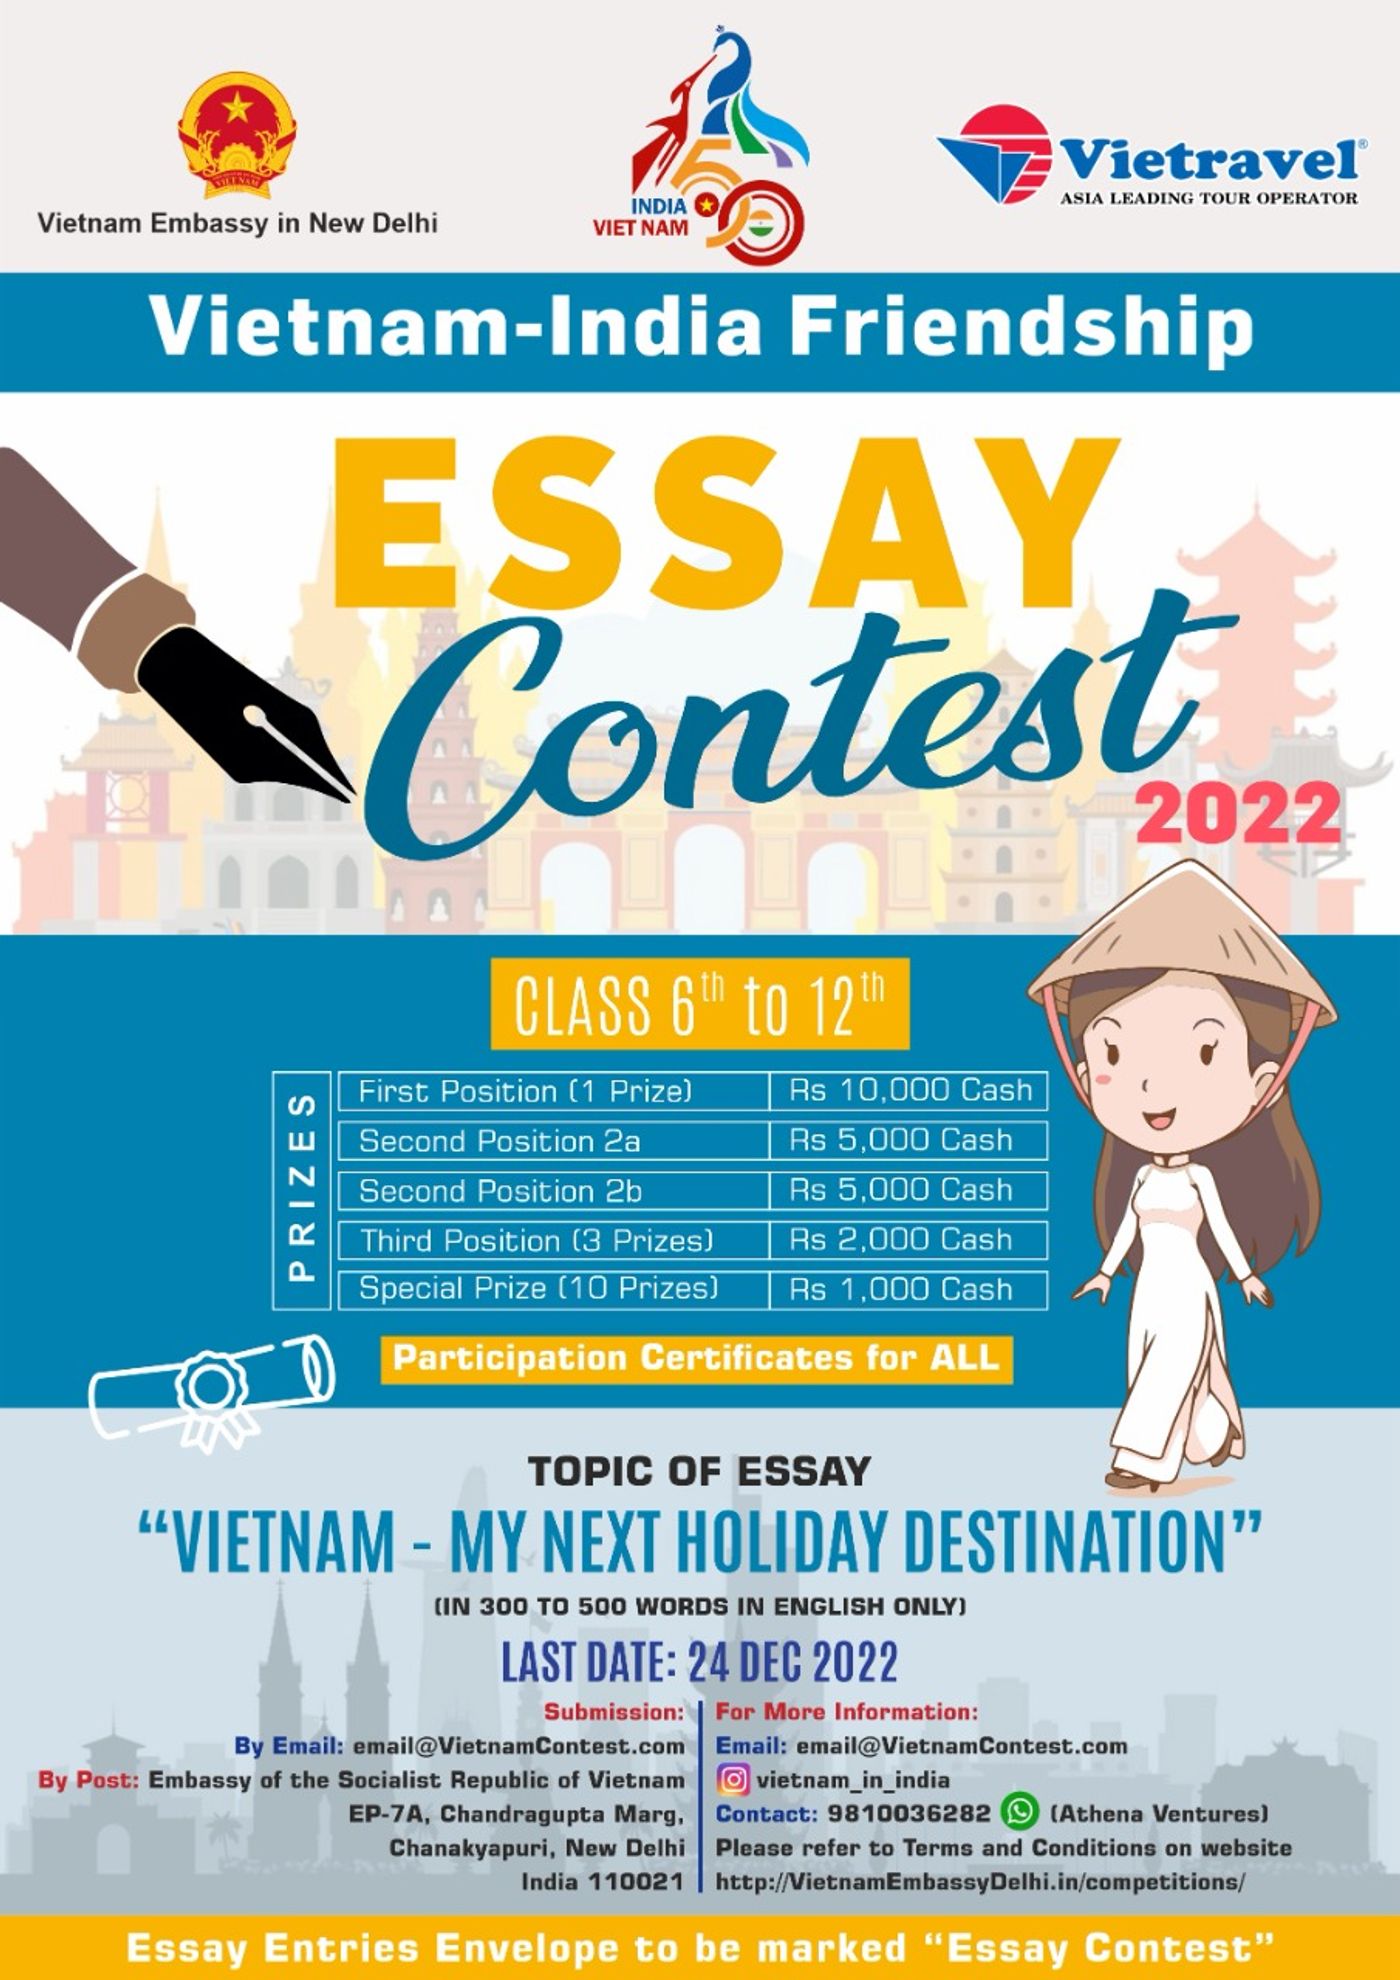 Vietnam - My Next Holiday Destination